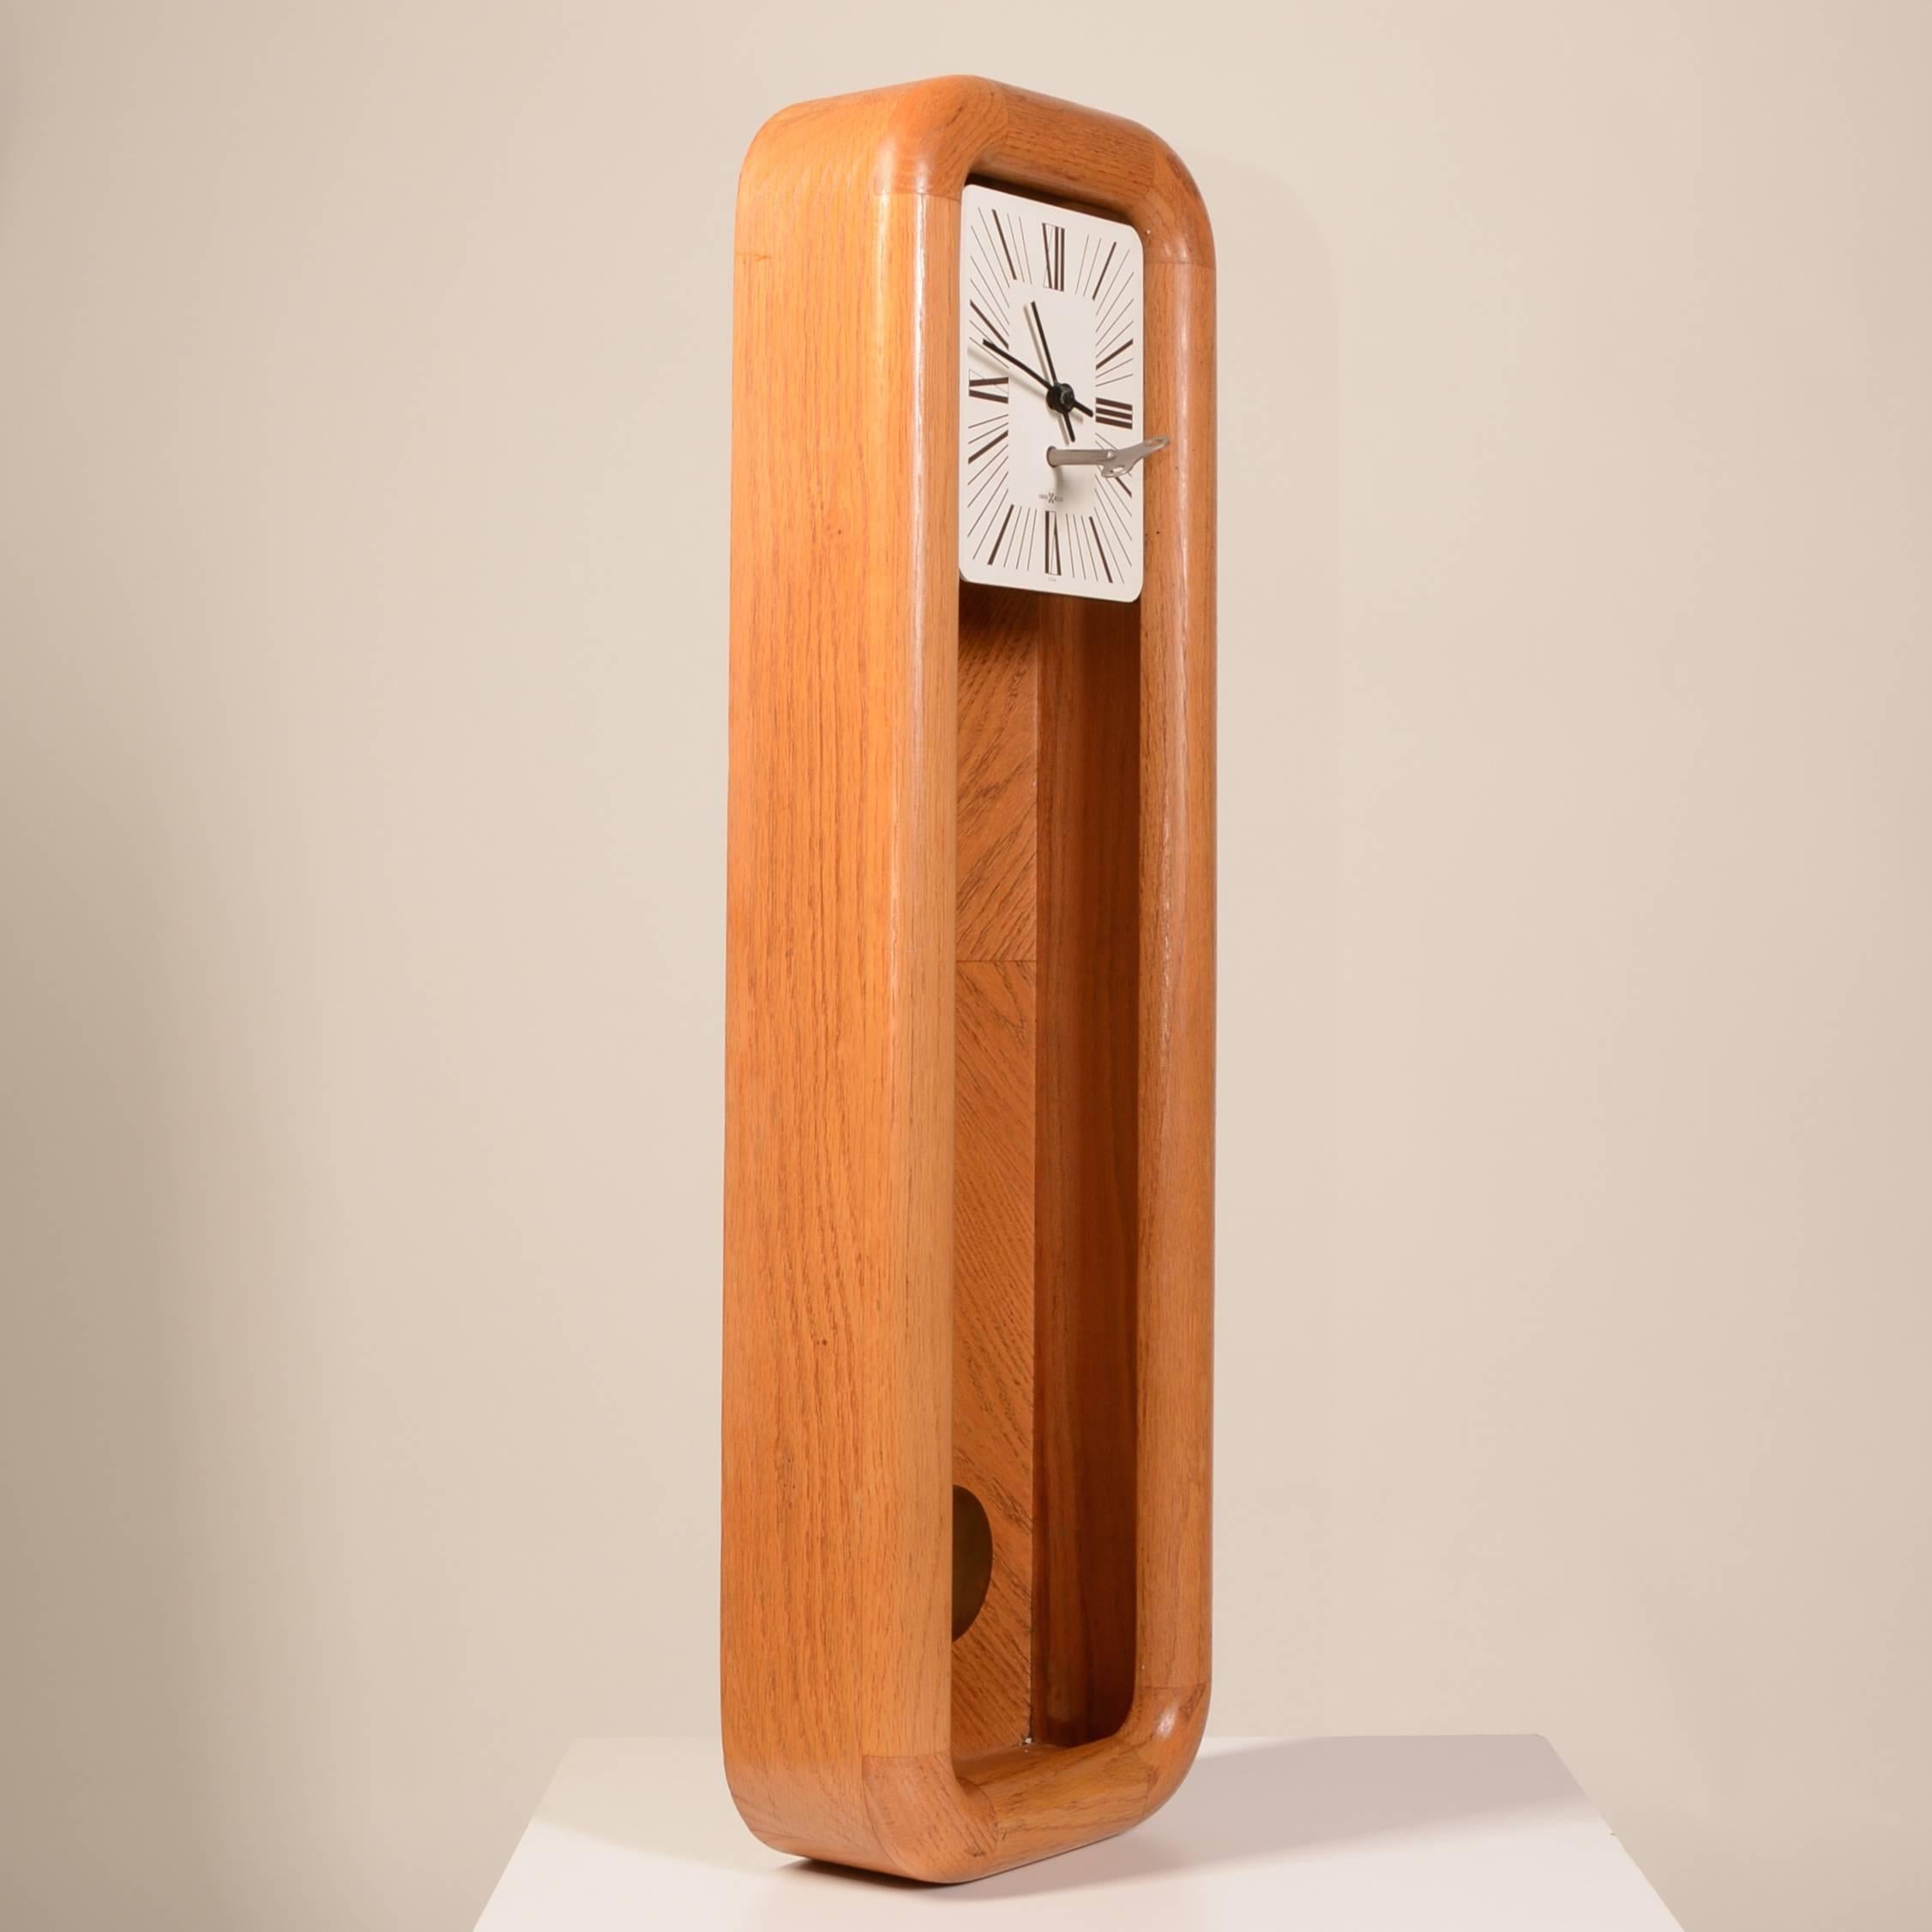 Il s'agit d'une horloge murale à pendule mécanique Howard Miller en chêne massif, datant de 1975. Il s'agit d'un modèle 612, avec un remontoir de 8 jours et une excellente tenue de l'heure. Le boîtier est un beau et lourd chêne luisant et les